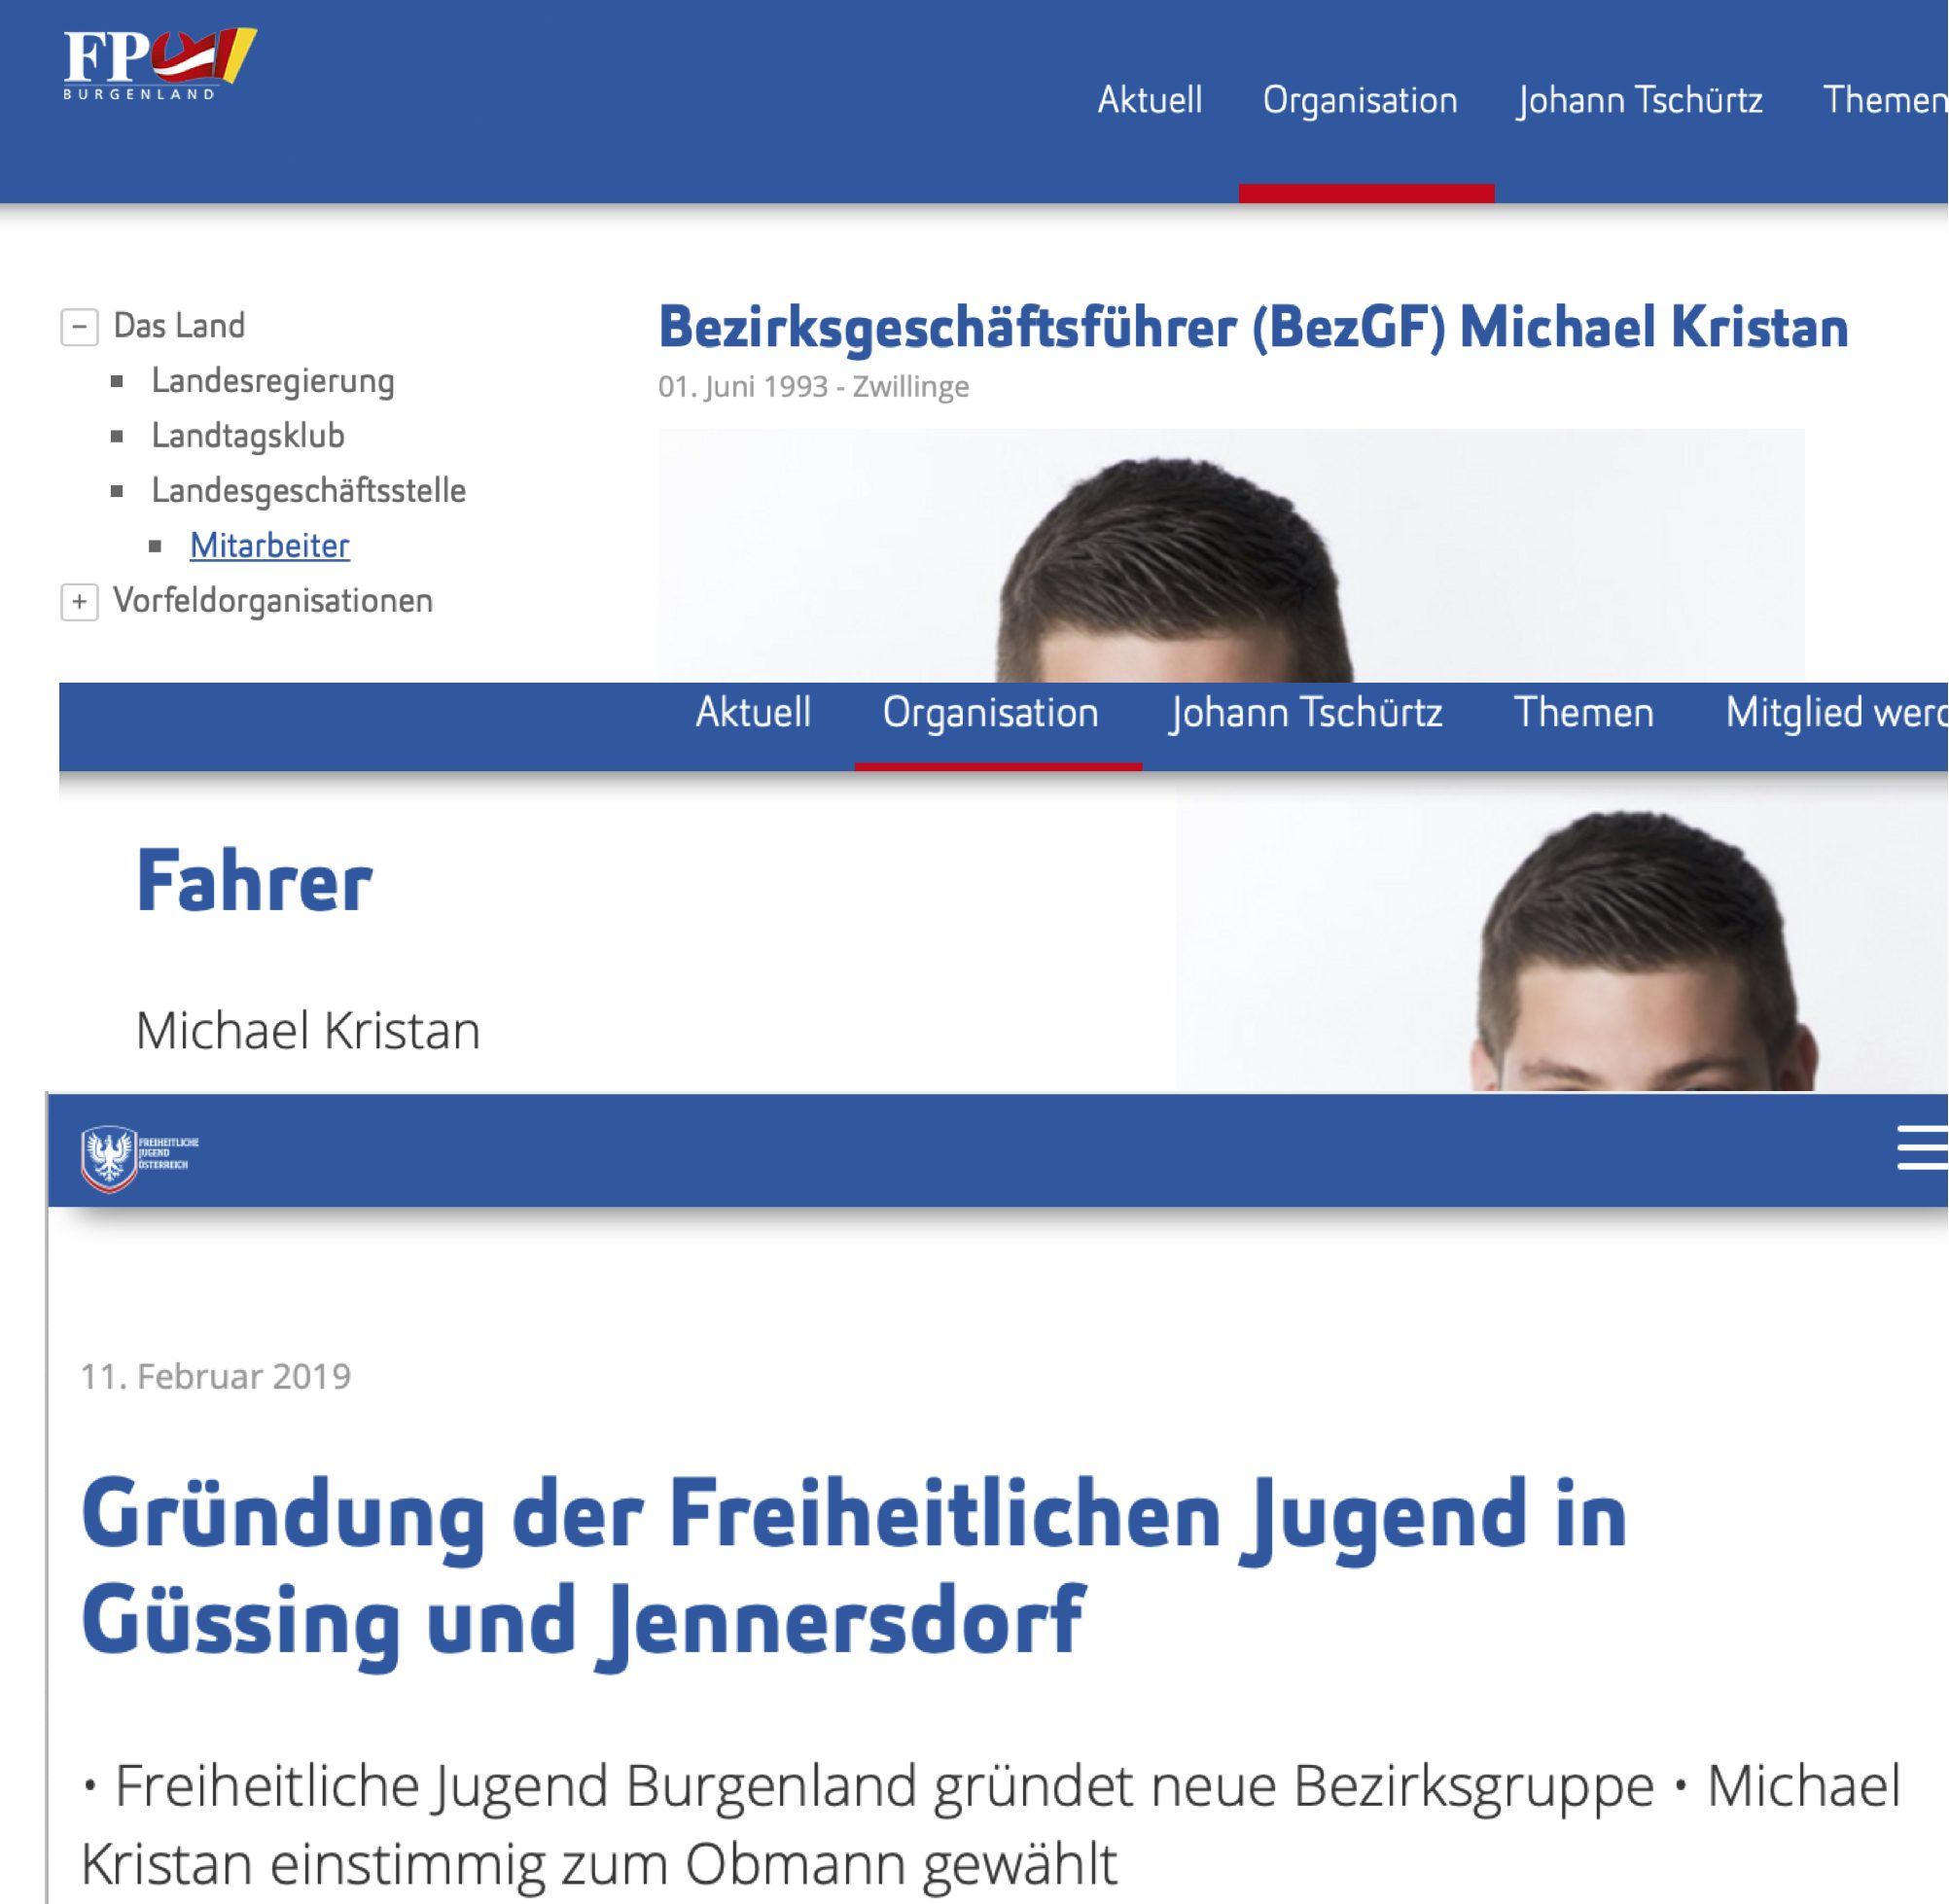 Michael Kristan: Bezrksgeschäftsführer, Fahrer, Obmann RFJ Güssing/Jennersdorf